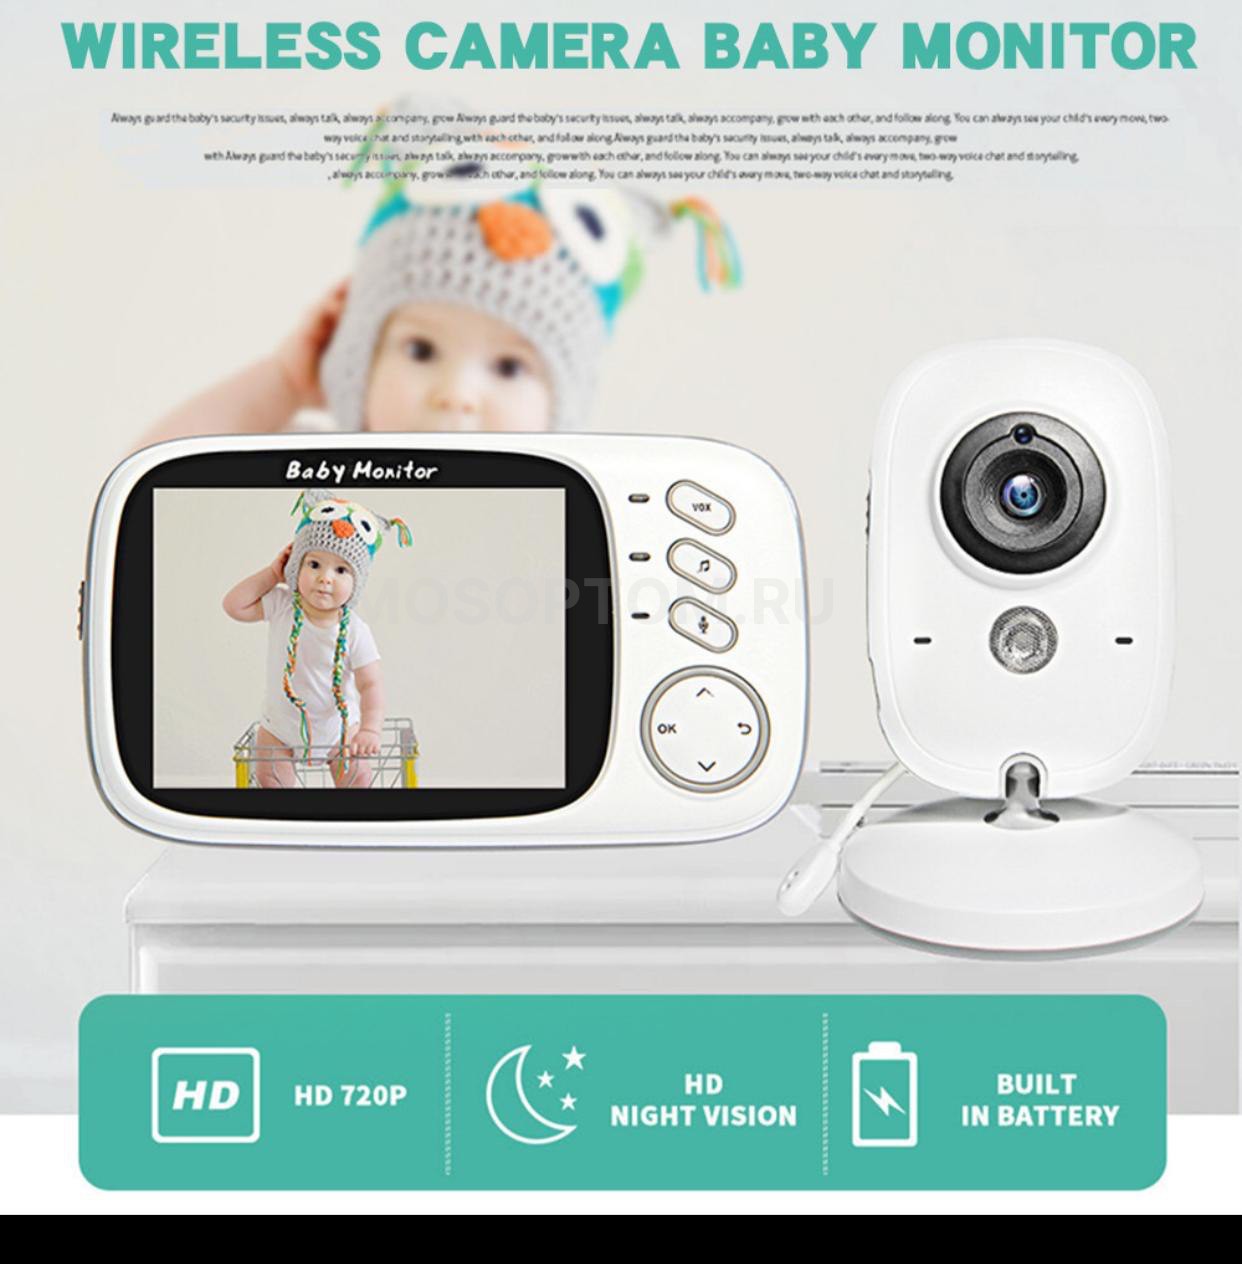 Беспроводная видеоняня Video Baby Monitor VB-603 с увеличенным радиусом действия, цветным экраном 3,2" высокого разрешения оптом - Фото №5